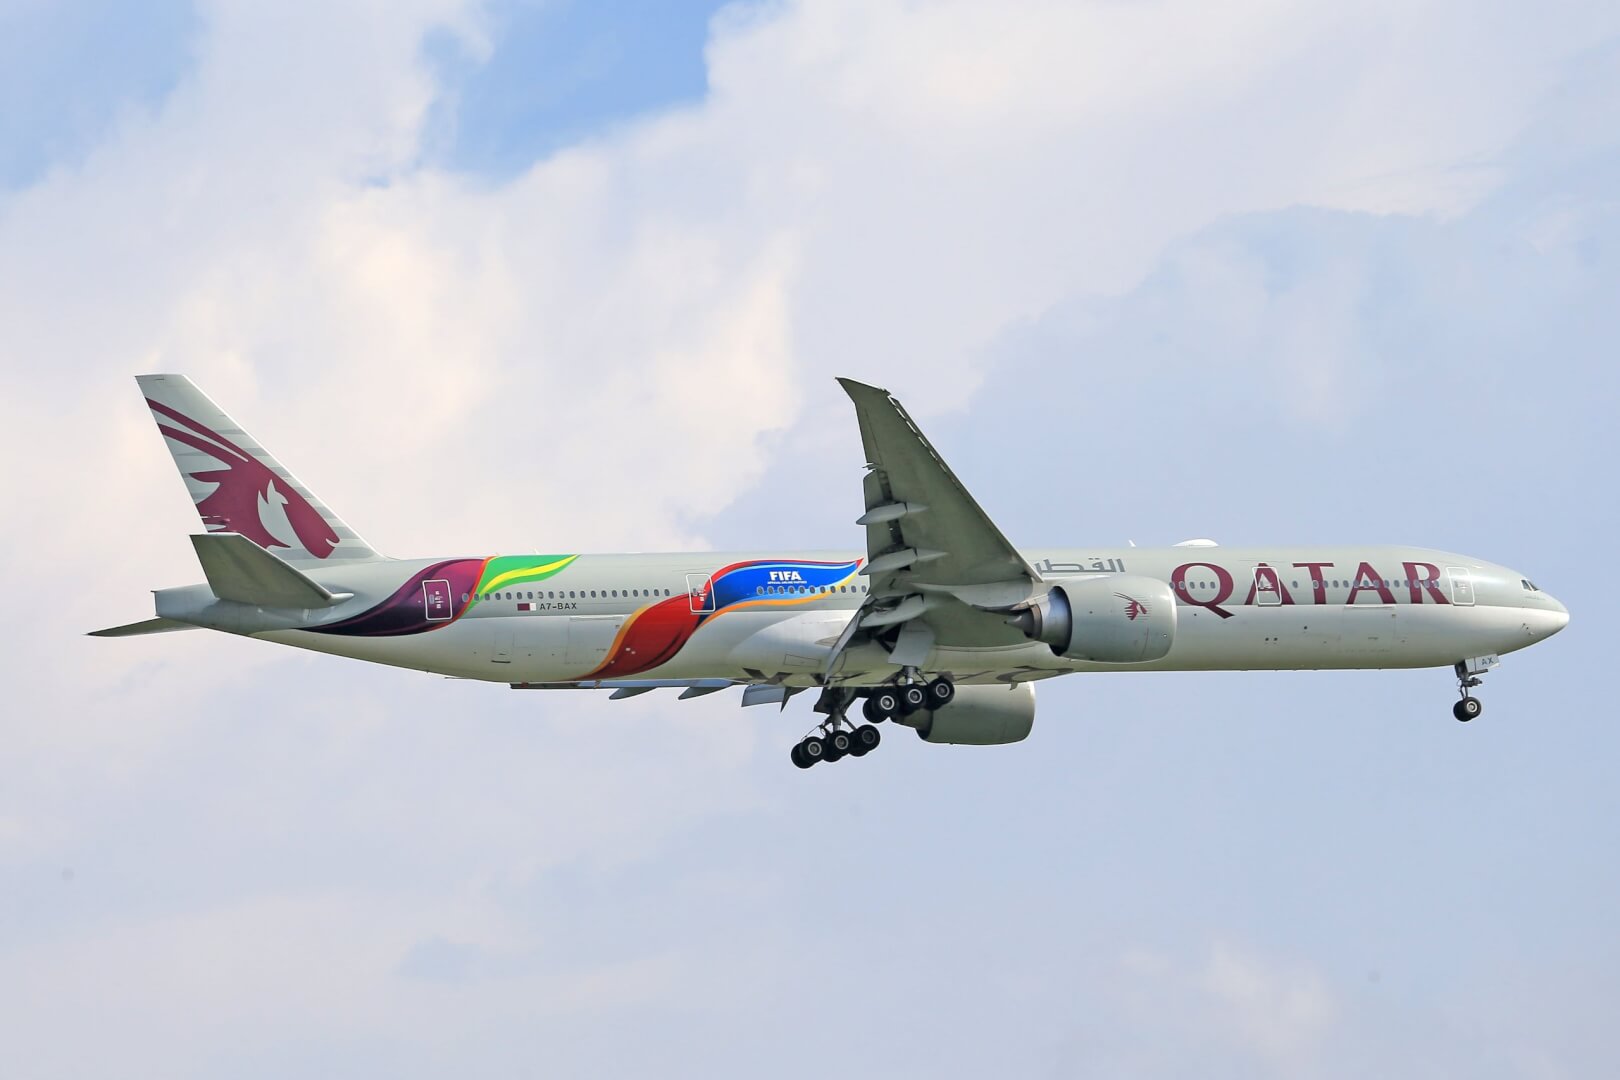 Avião no ar, da companhia Qatar Airways.. Imagem disponível em Pexels.